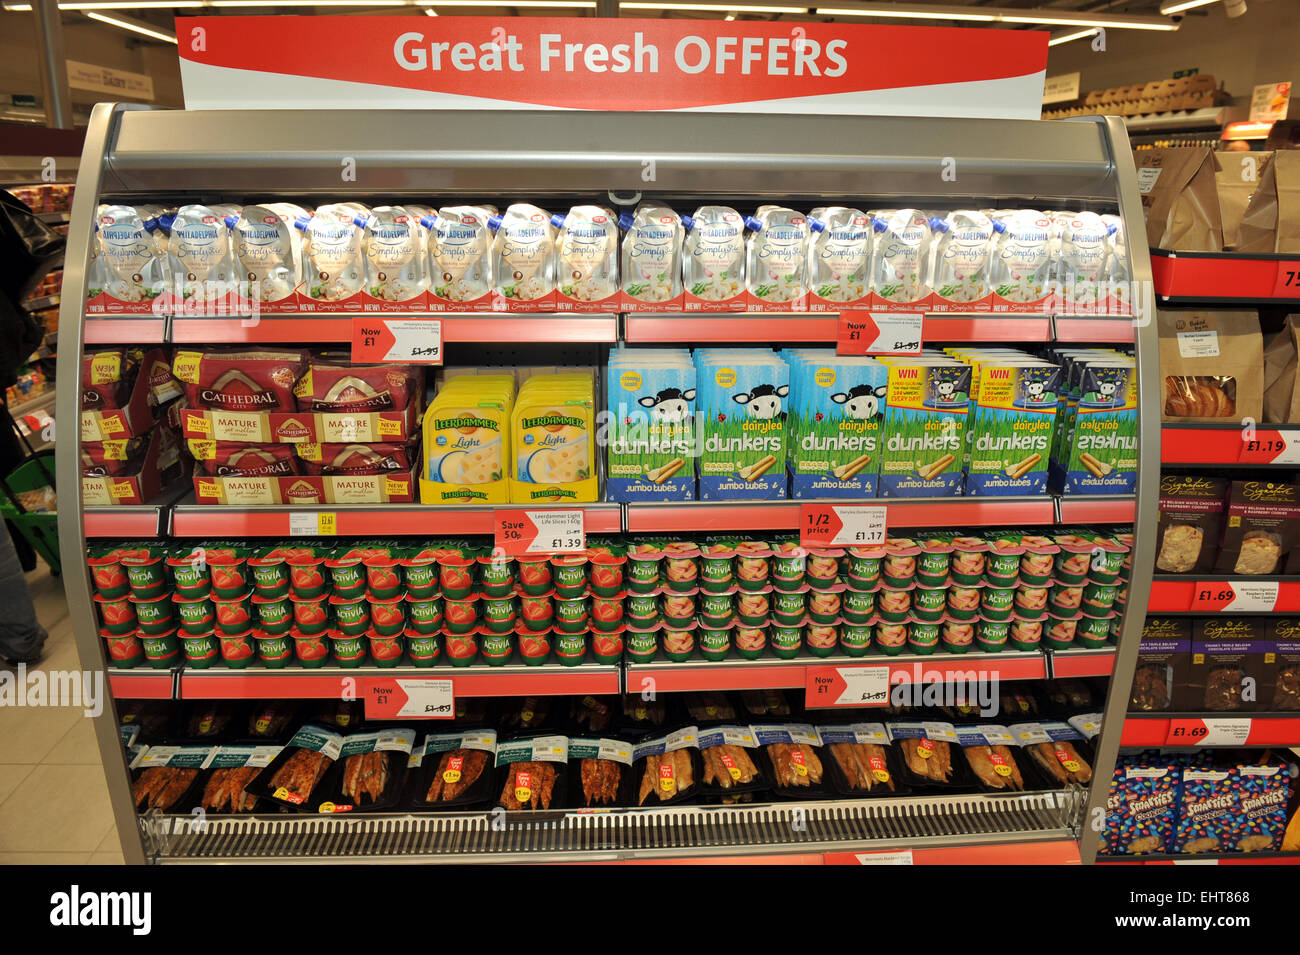 Supermarché réfrigérateur étagère avec des offres dans un supermarché Morrisons store Banque D'Images